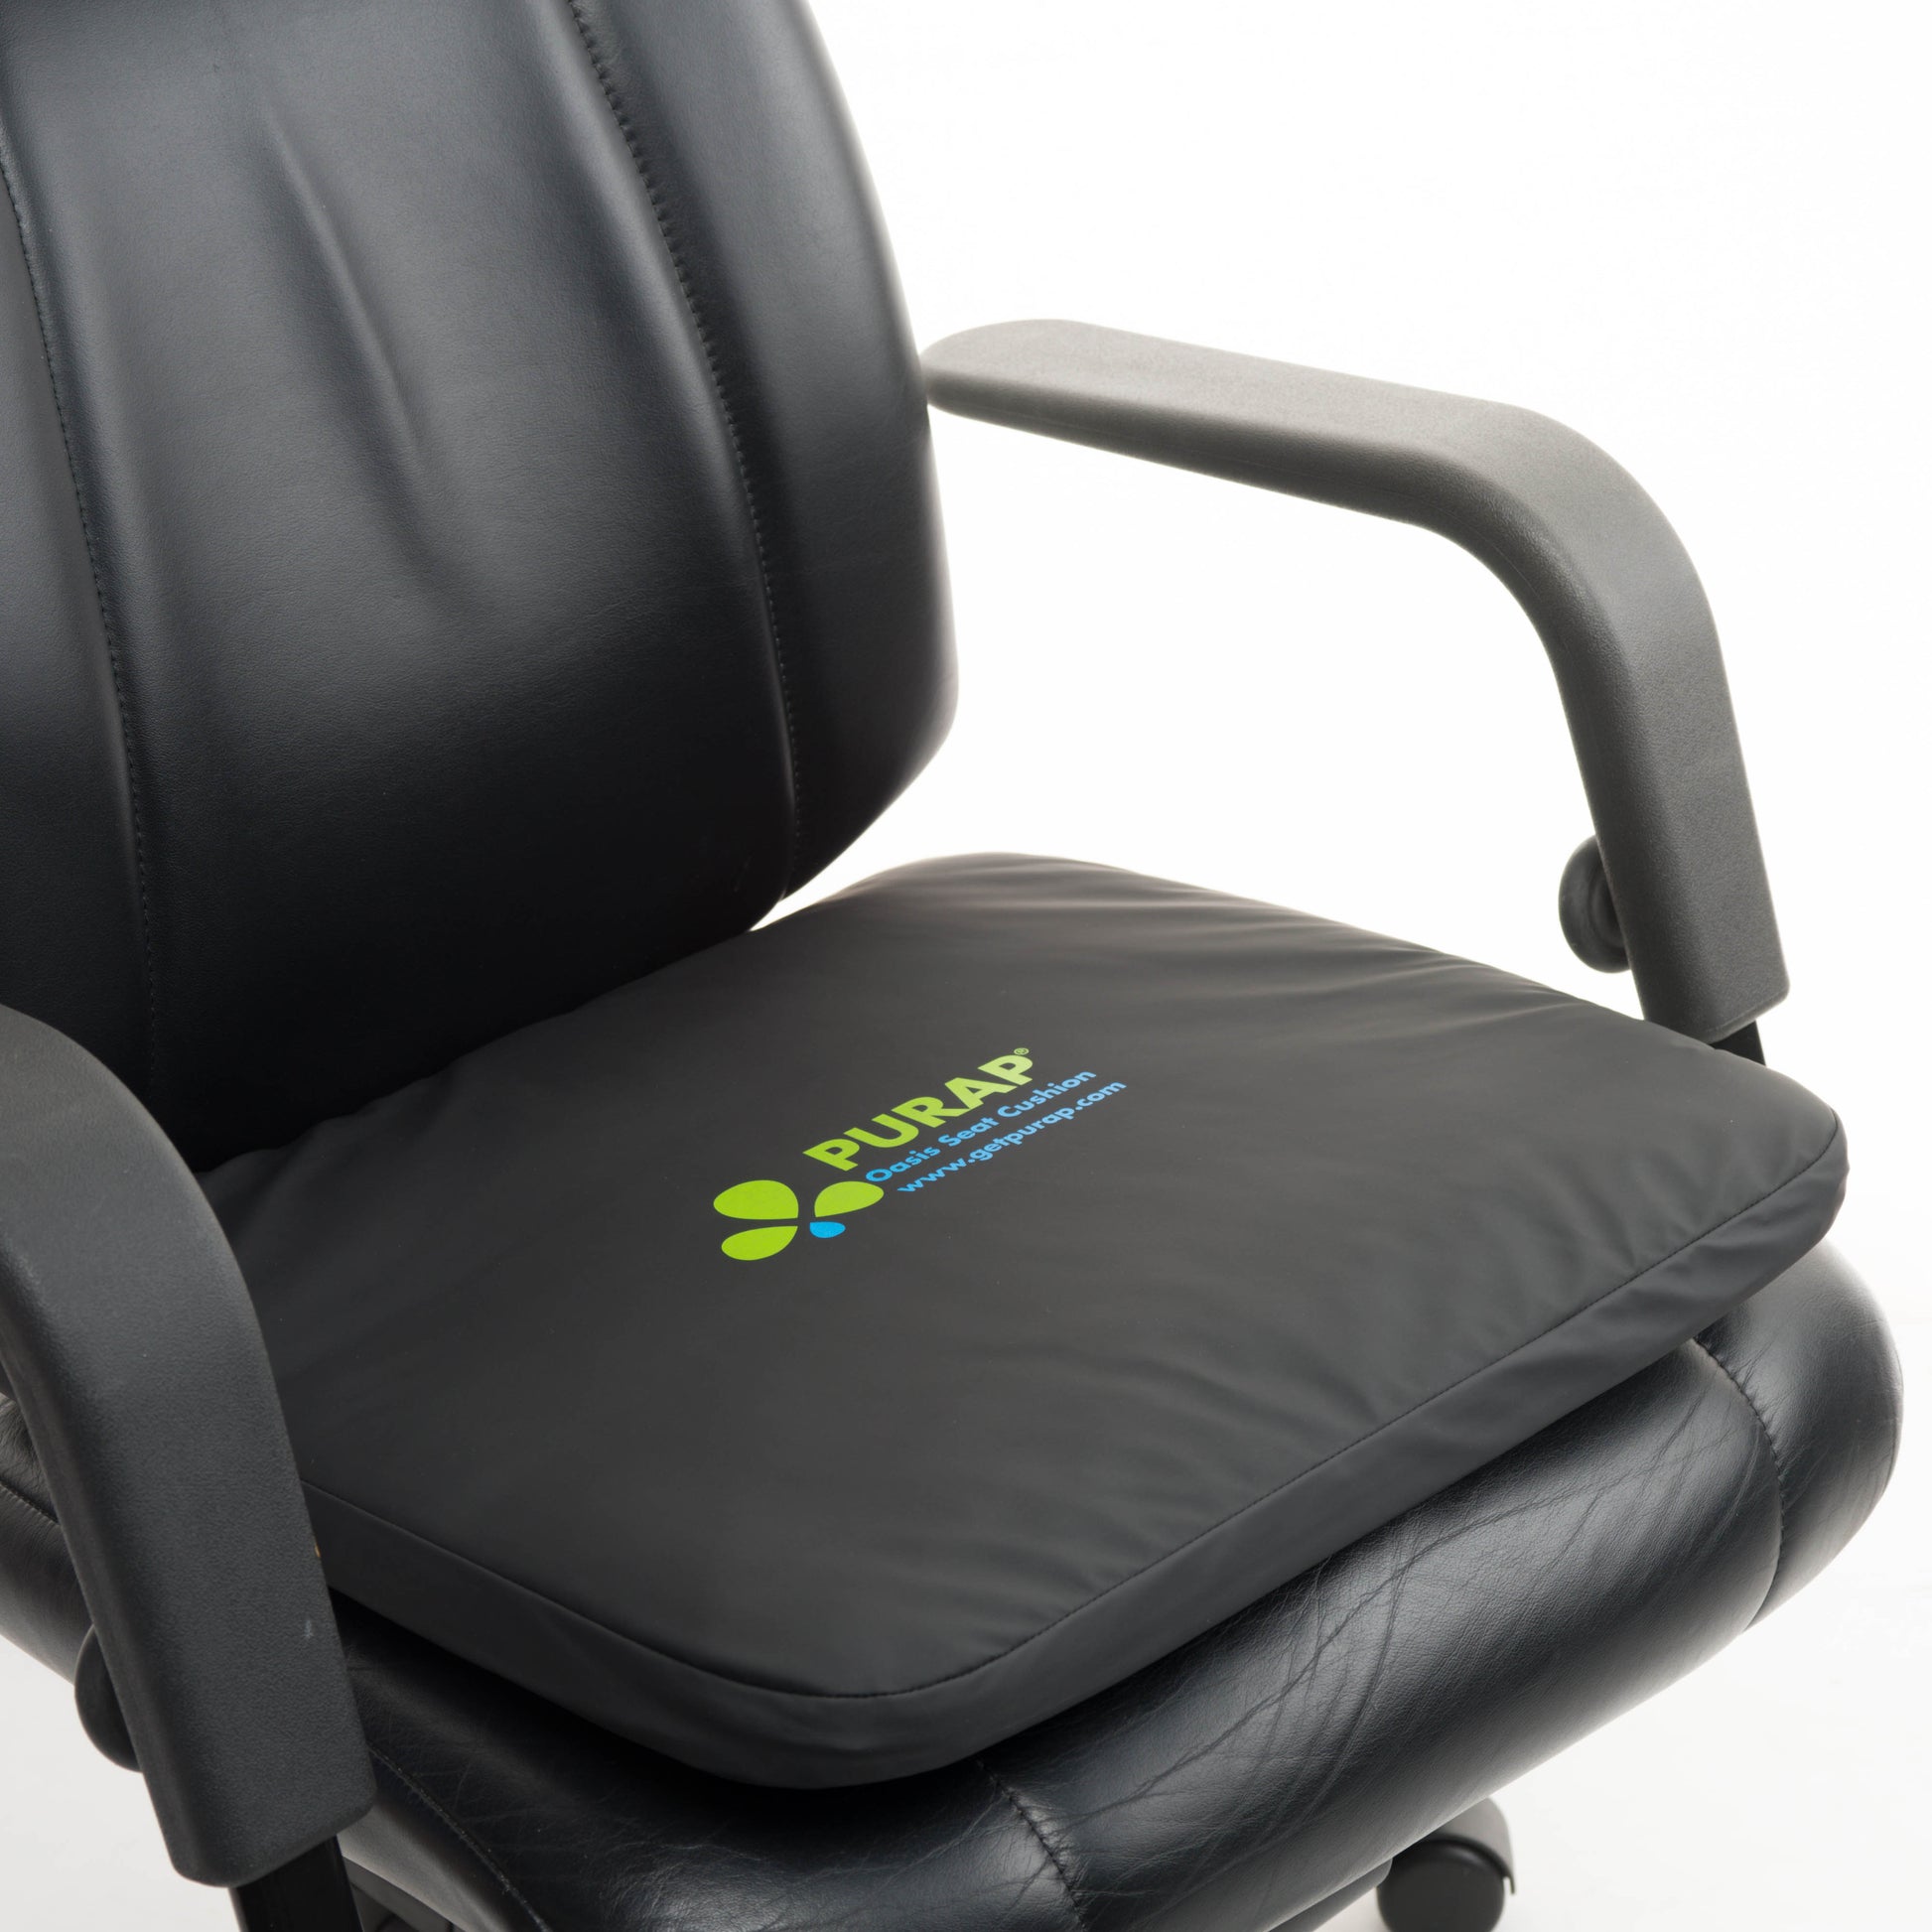  Seat Cushion for Office Chair Car Seat Cushion